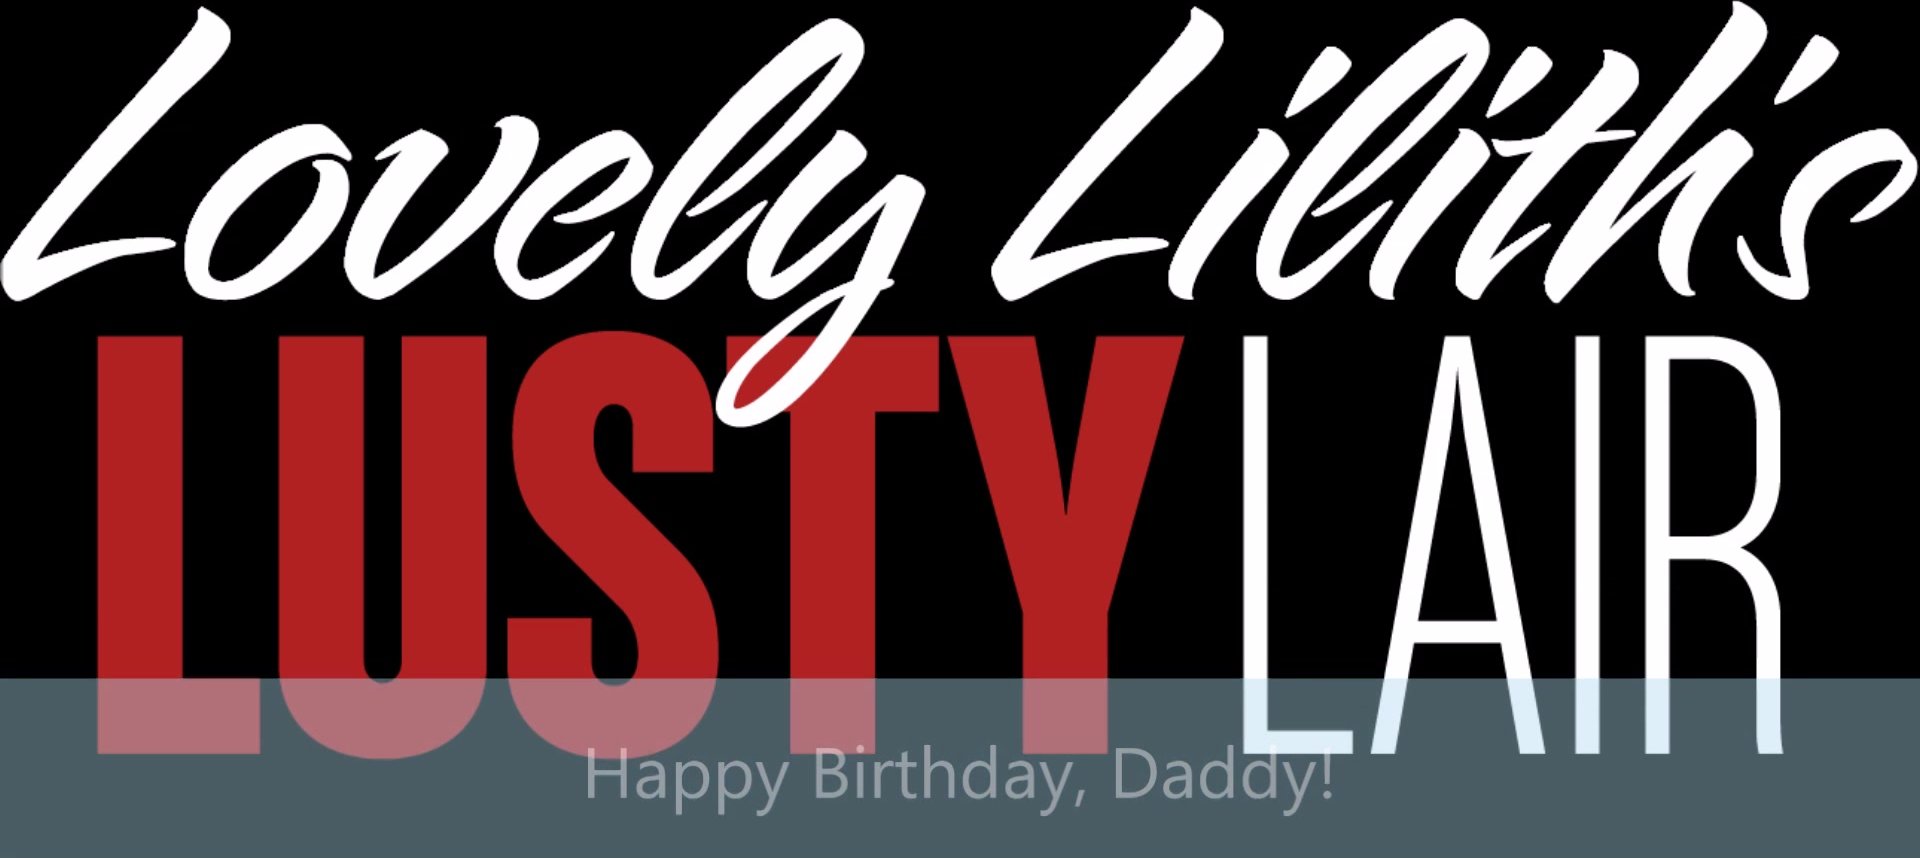 L.L Daddy Bday